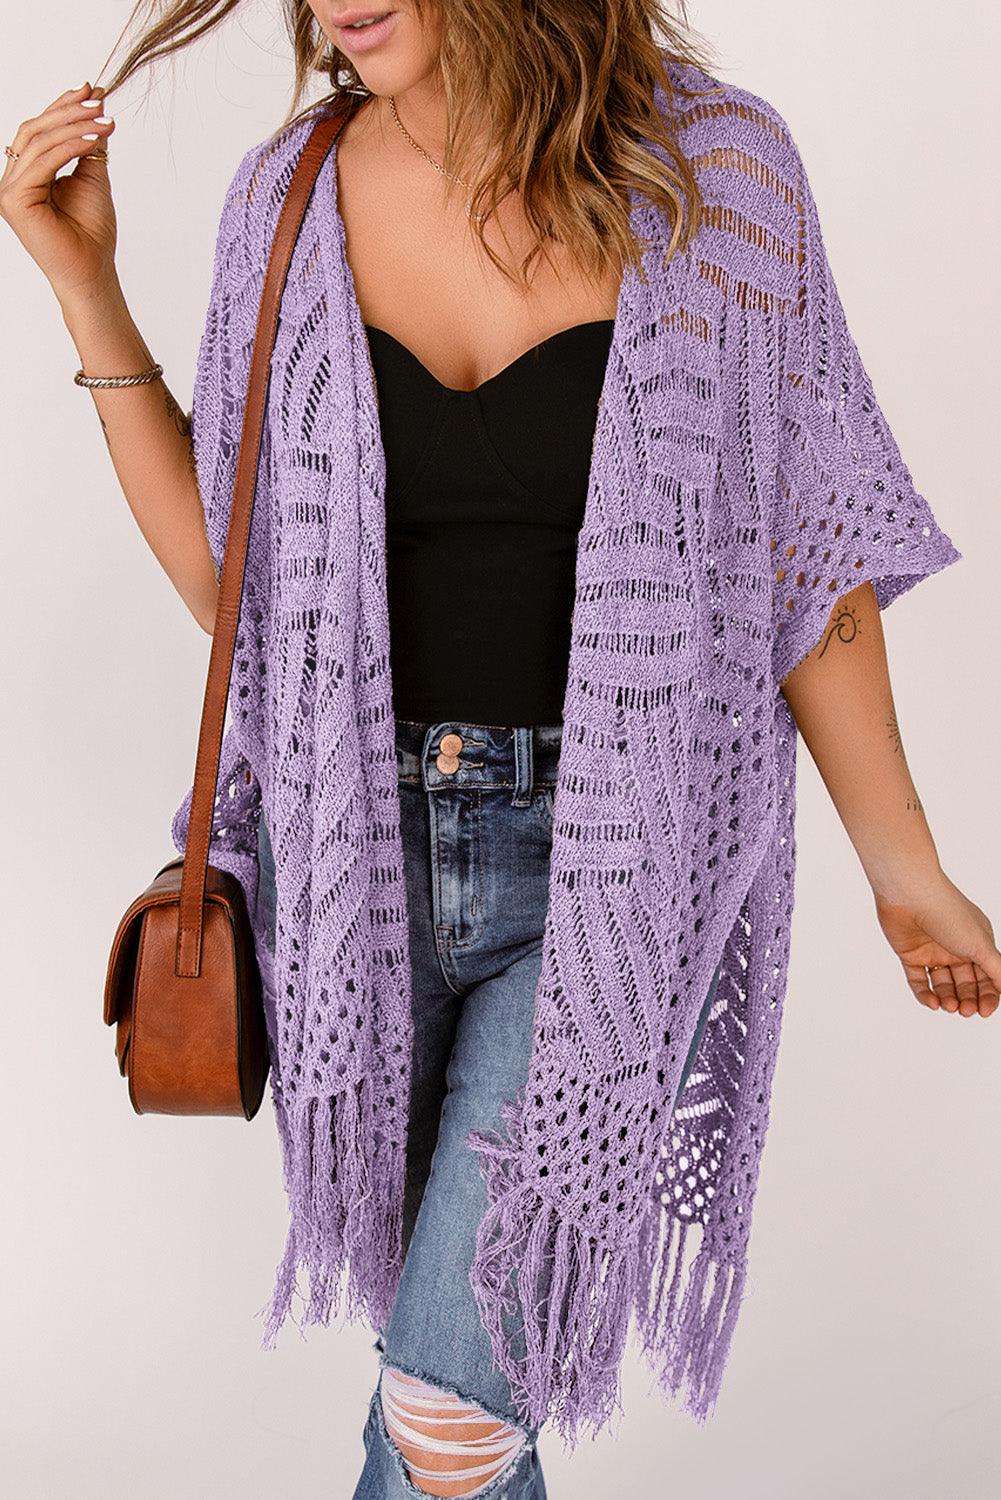 a woman wearing a purple crochet shawl